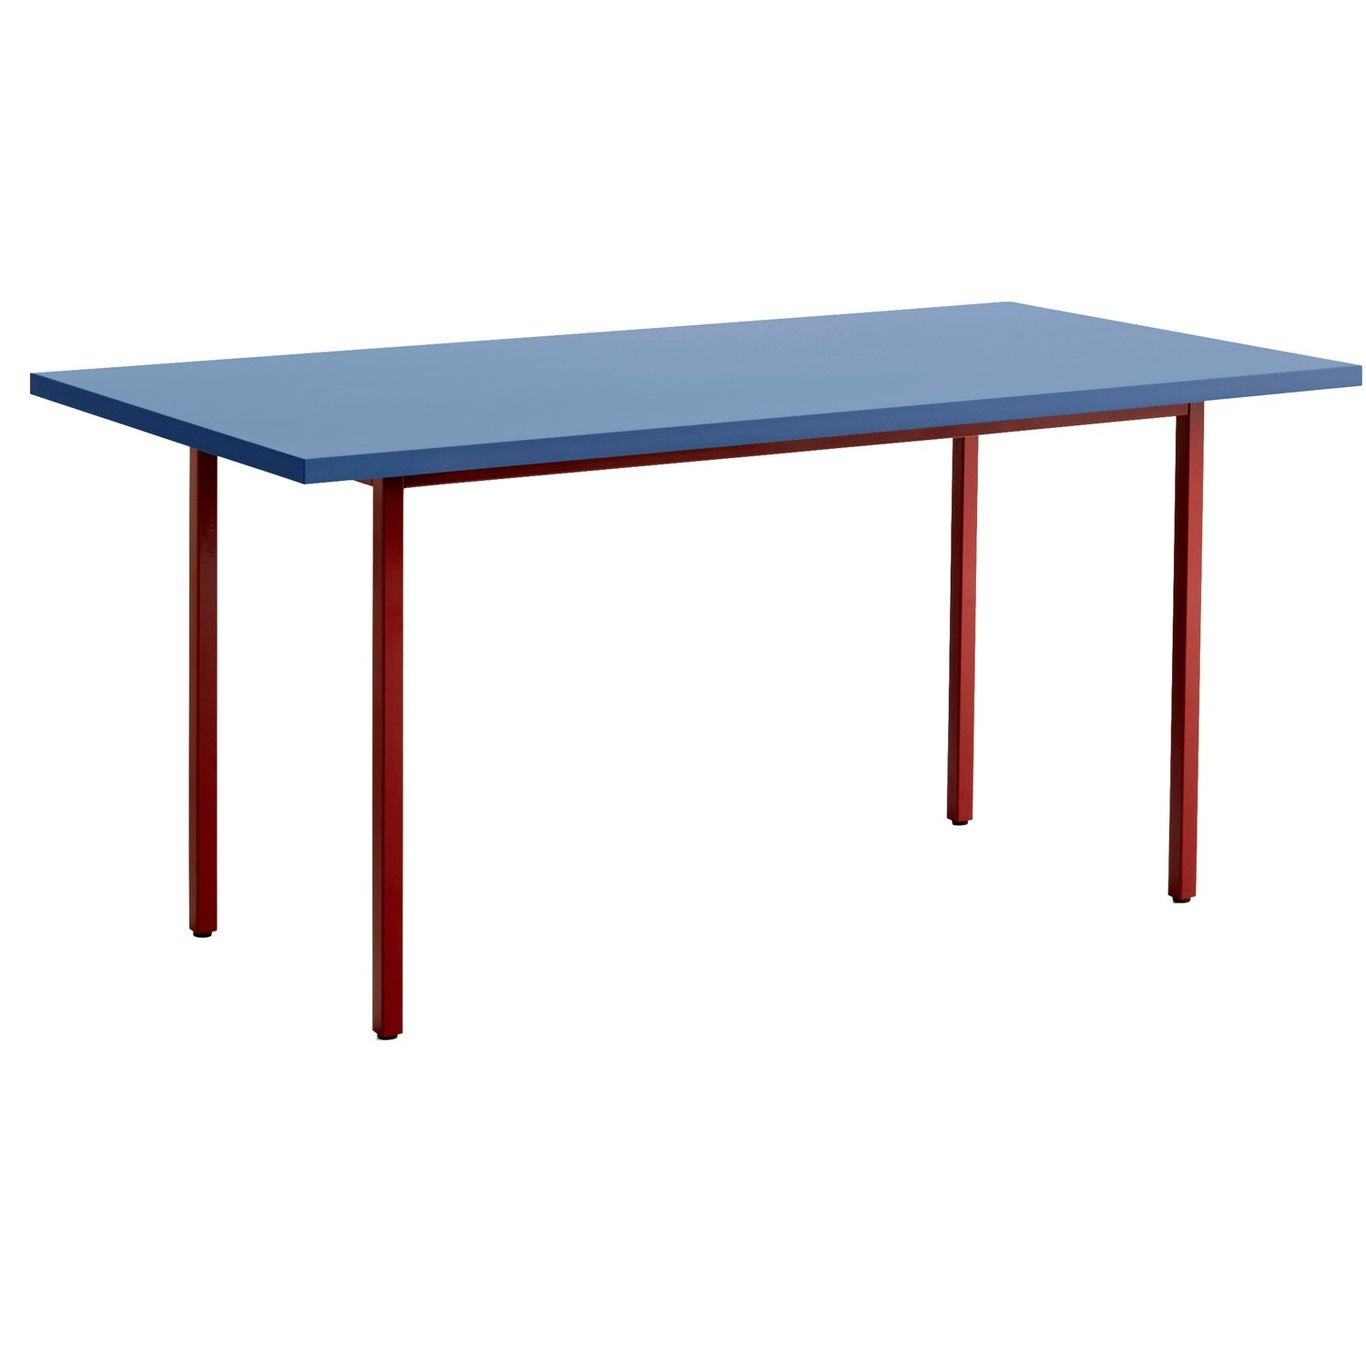 Two-Colour Table 160x82 cm, Wine / Blue